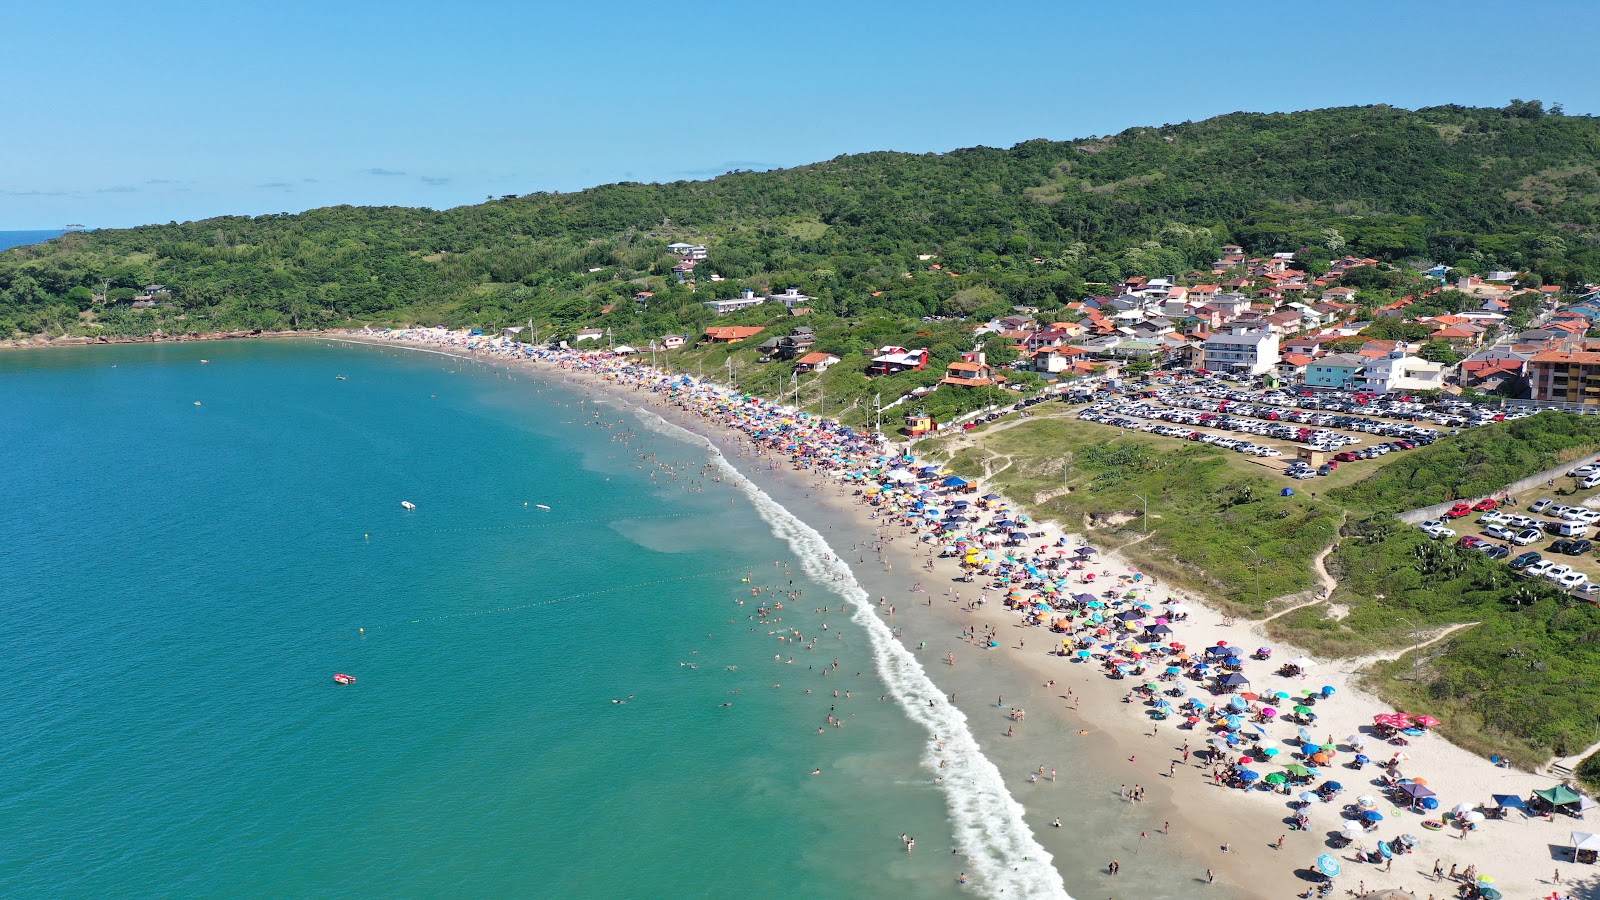 Praia de Cima'in fotoğrafı geniş plaj ile birlikte